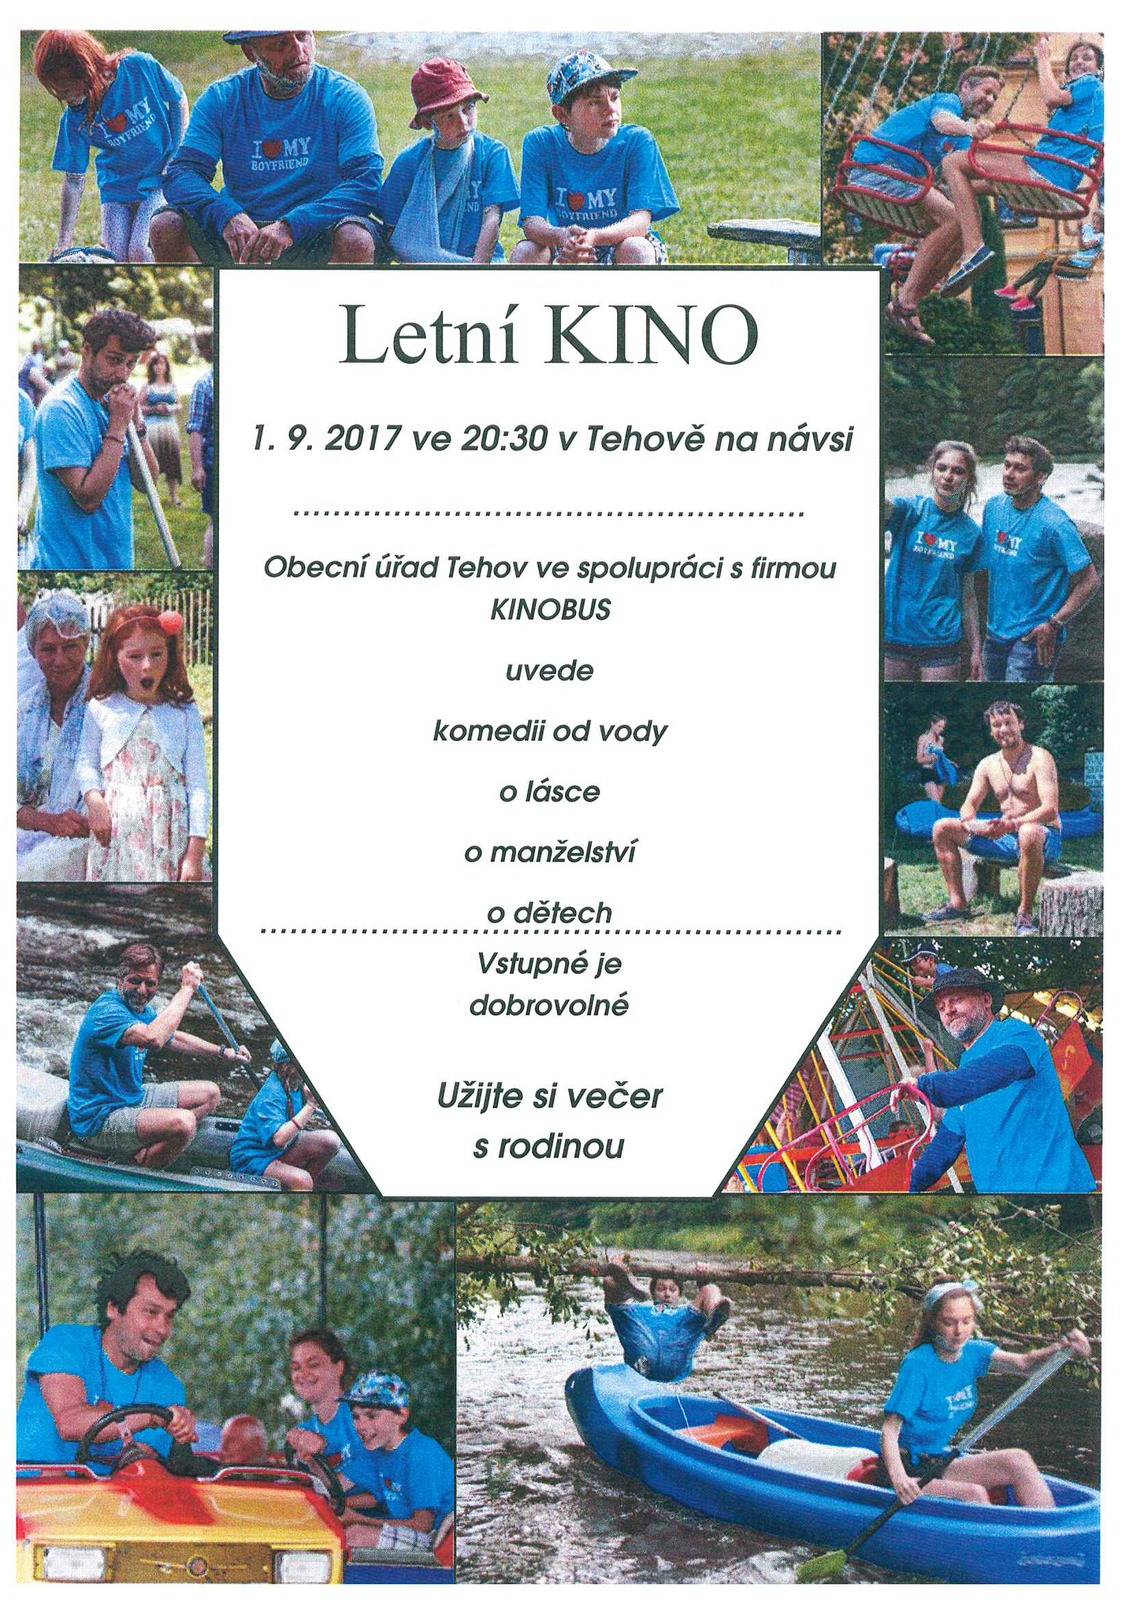 Plakát Letní KINO 2017.jpg